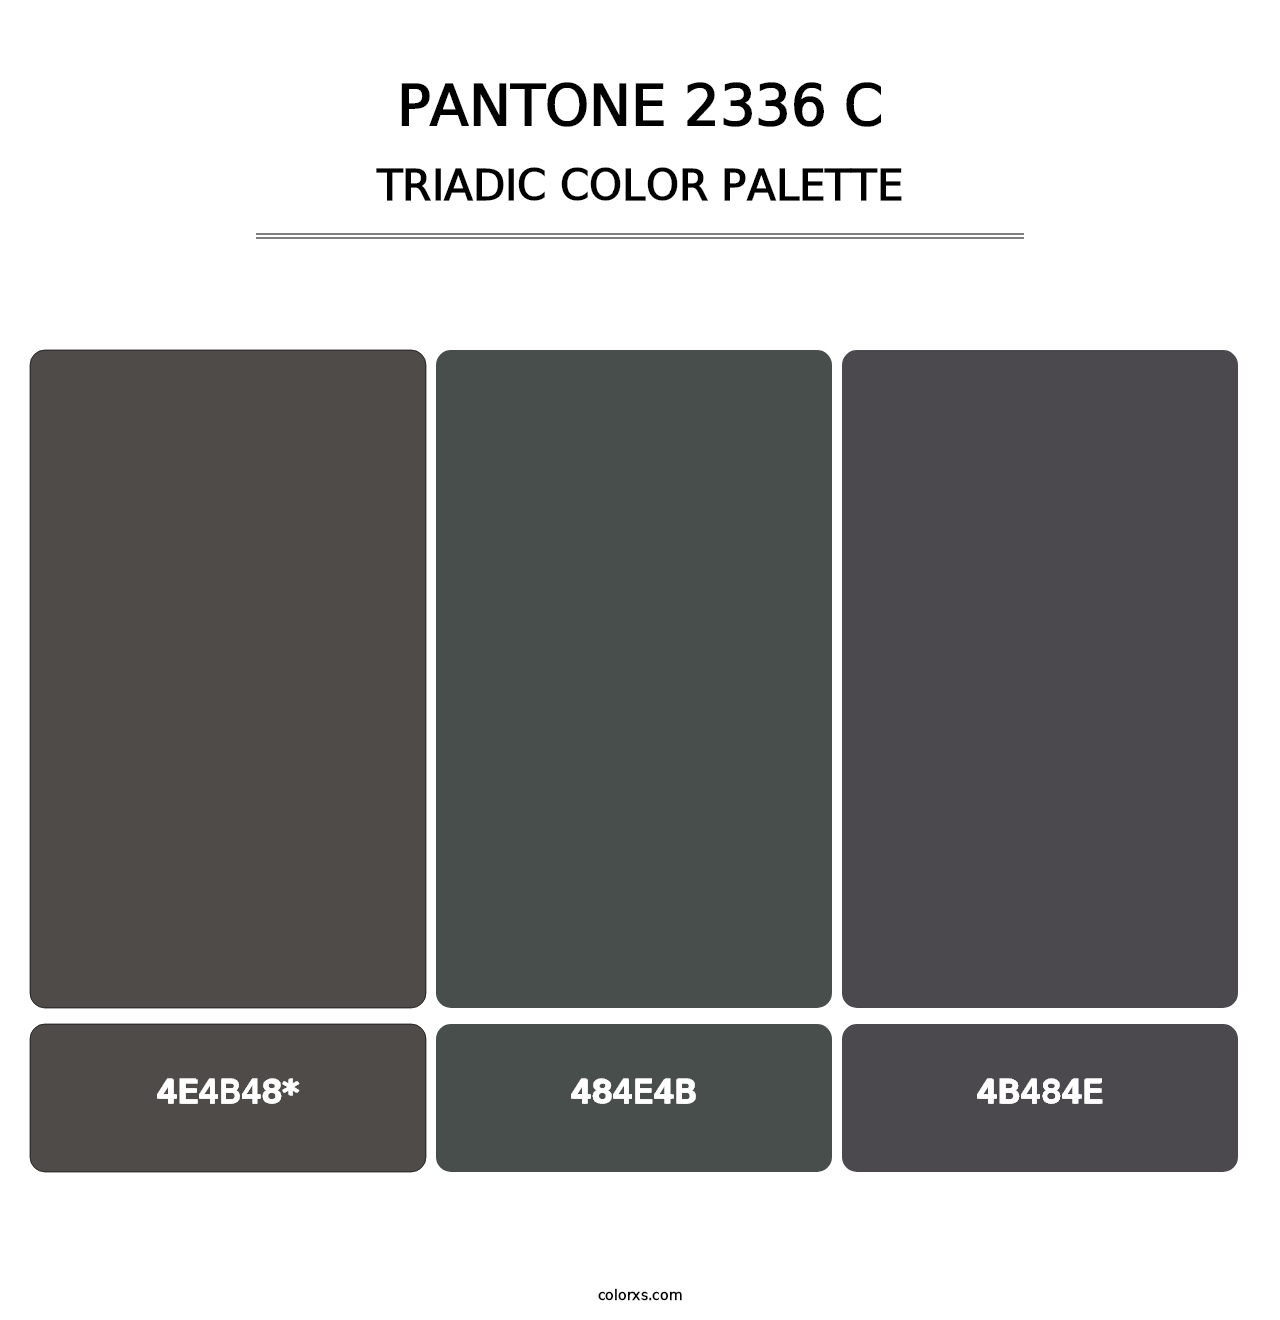 PANTONE 2336 C - Triadic Color Palette